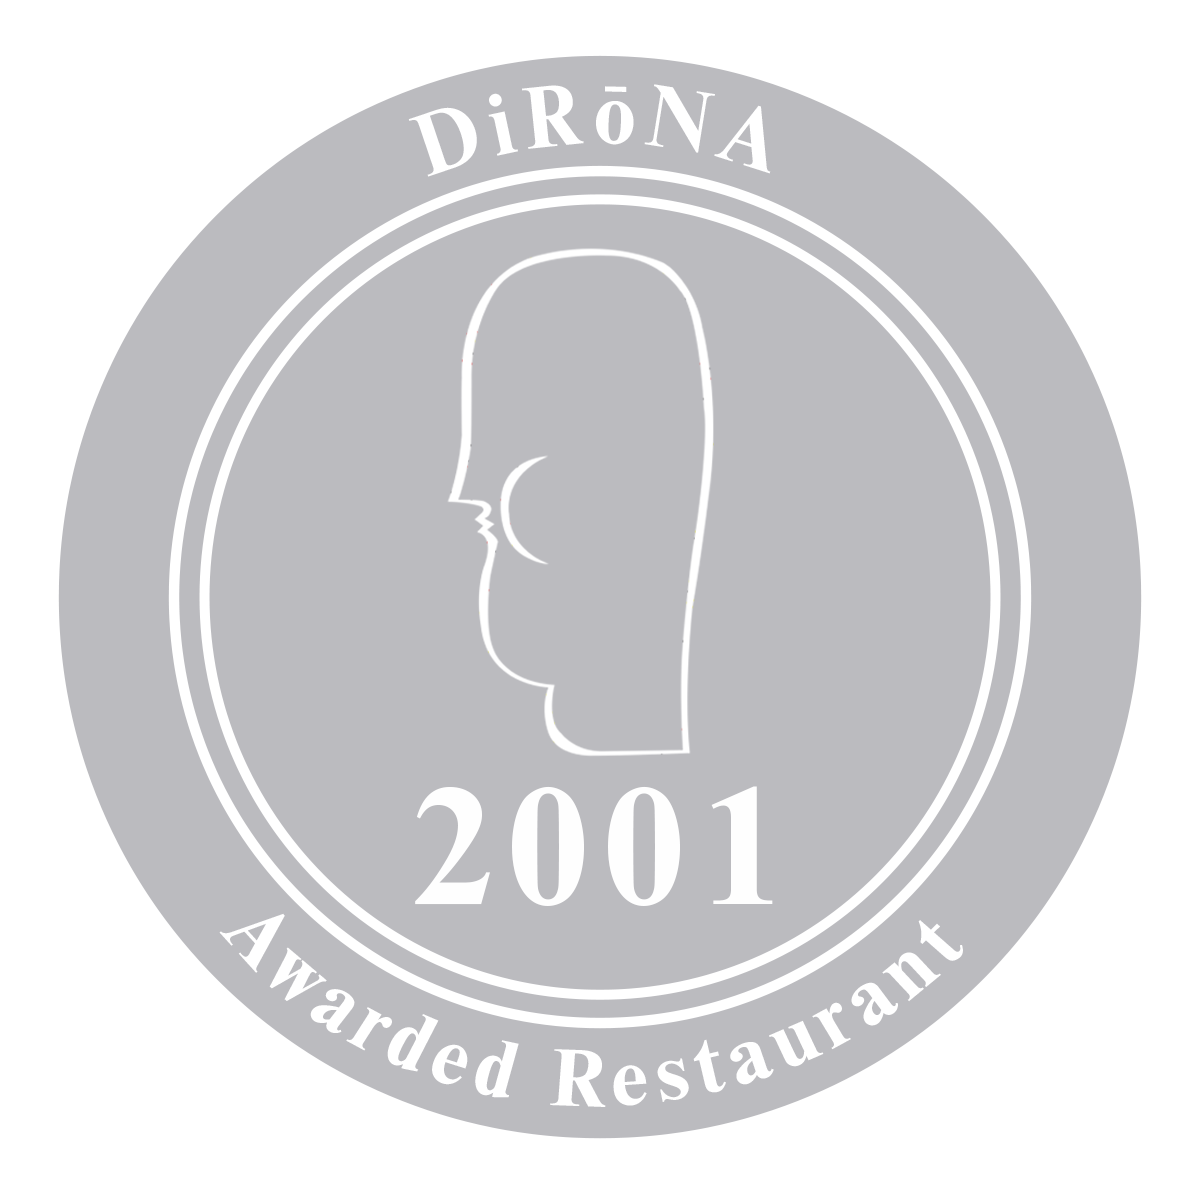 DiRoNA 2001 Badge-grey-editable